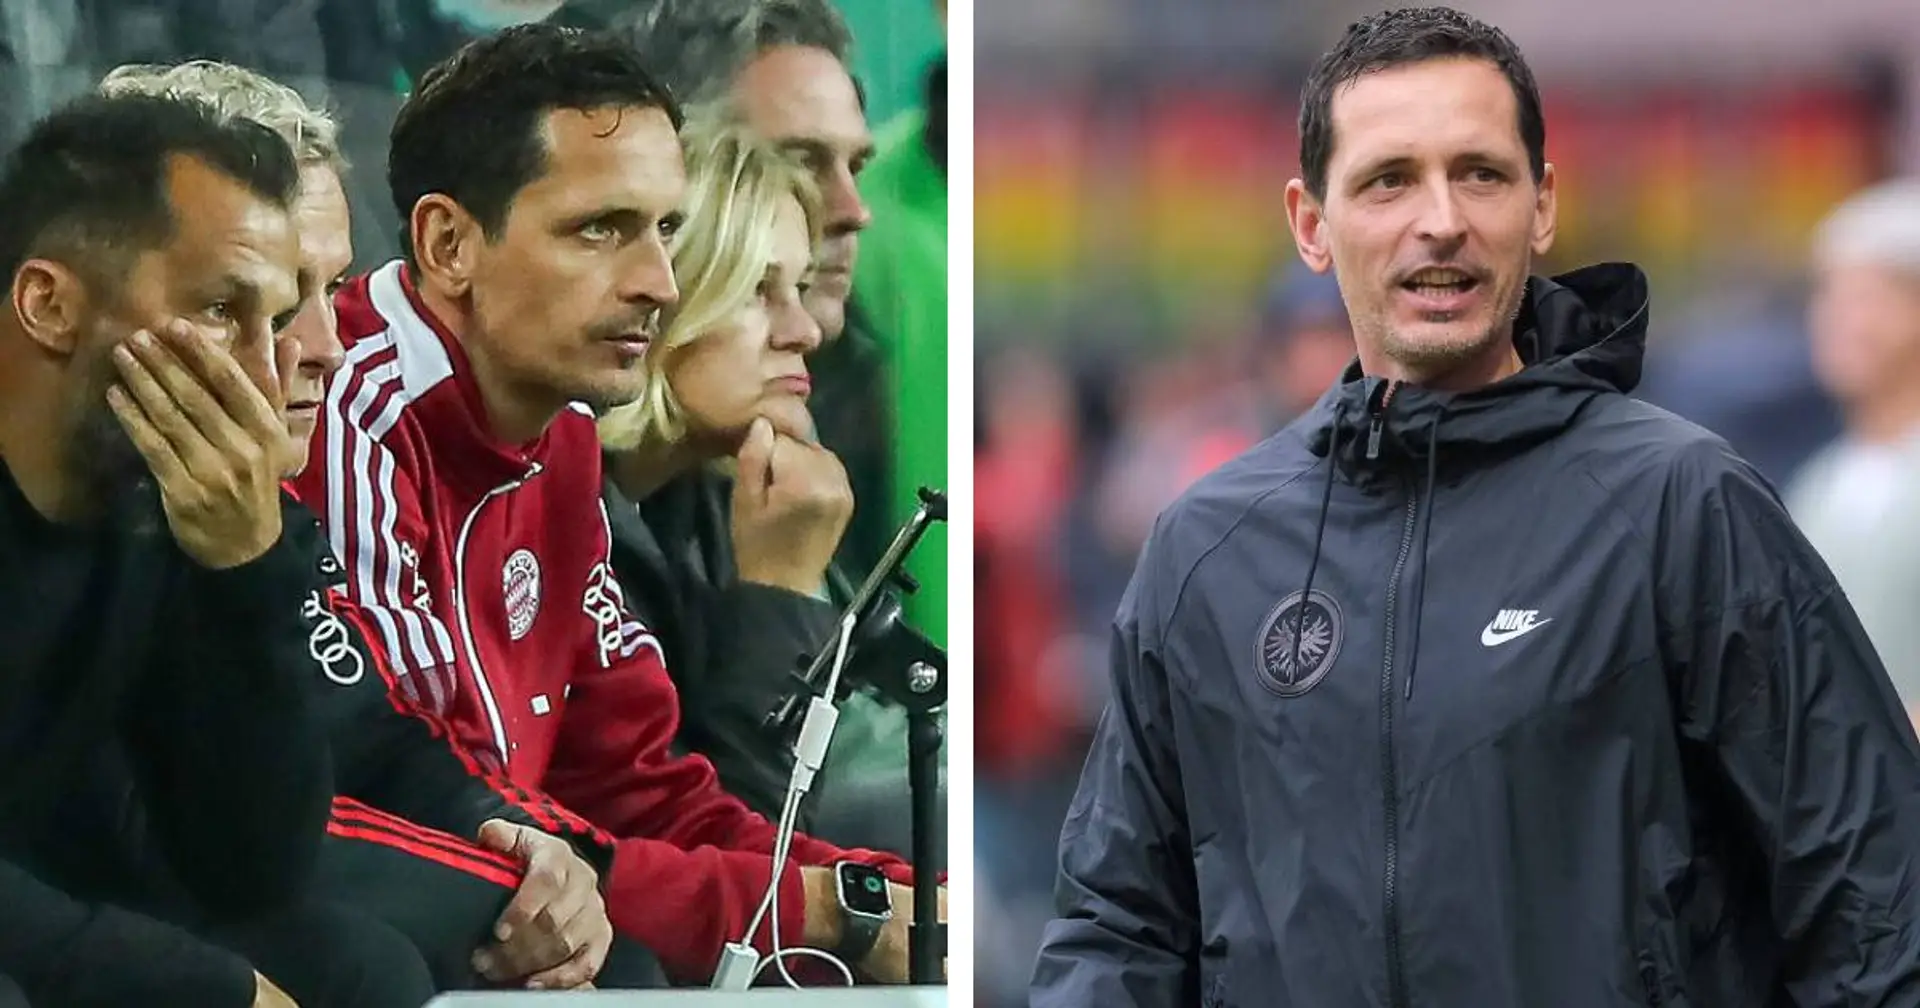 Kurios: Als Bayern zuletzt 5 Gegentore kassierte, stand Dino Toppmöller an der Seitenlinie der Münchner